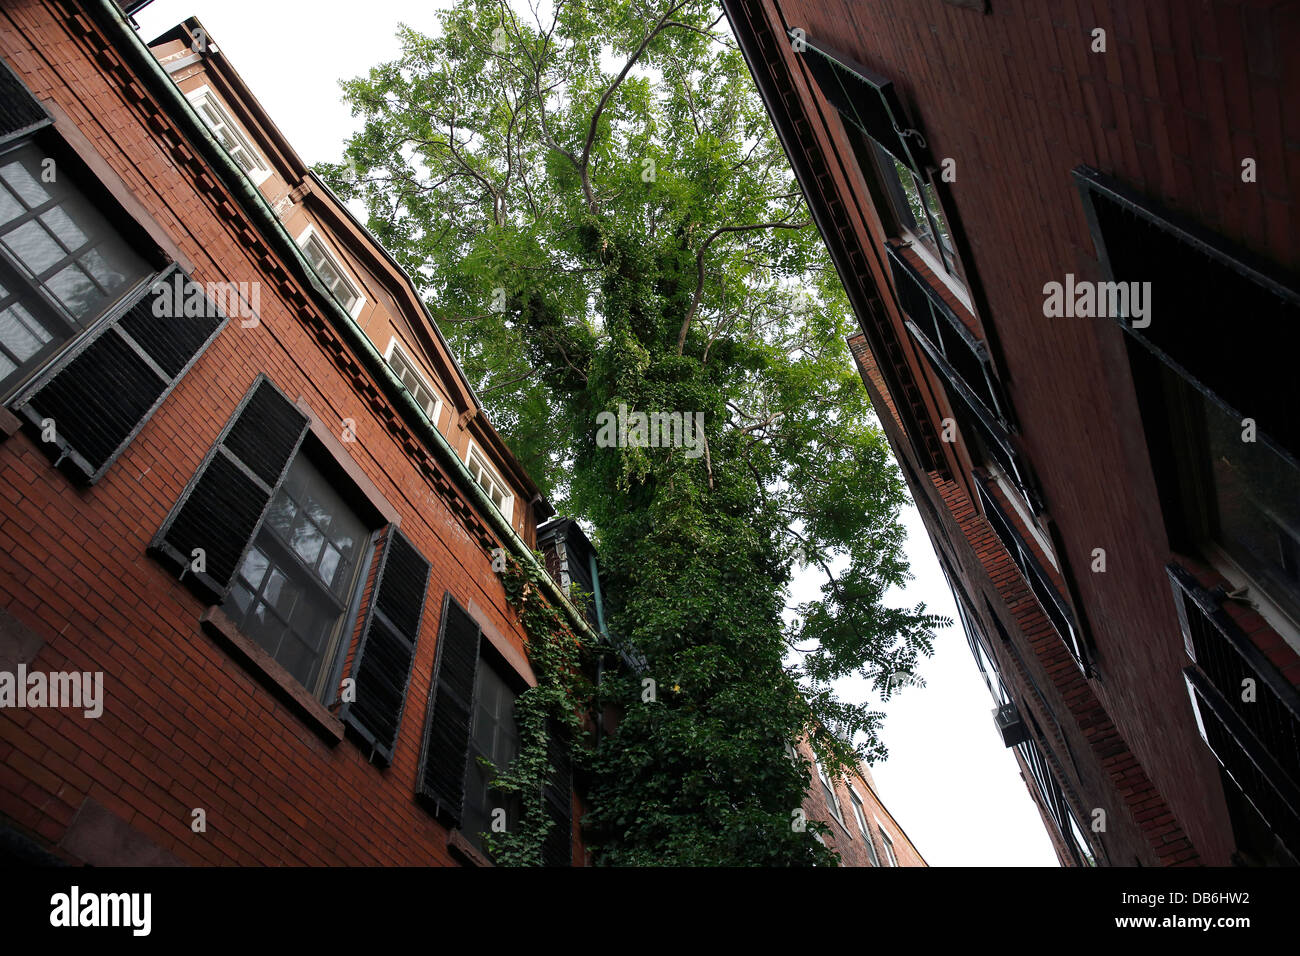 Un arbre grandit entre les maisons en place de Sentry, une étroite rue piétonne sur Beacon Hill à Boston, Massachusetts Banque D'Images